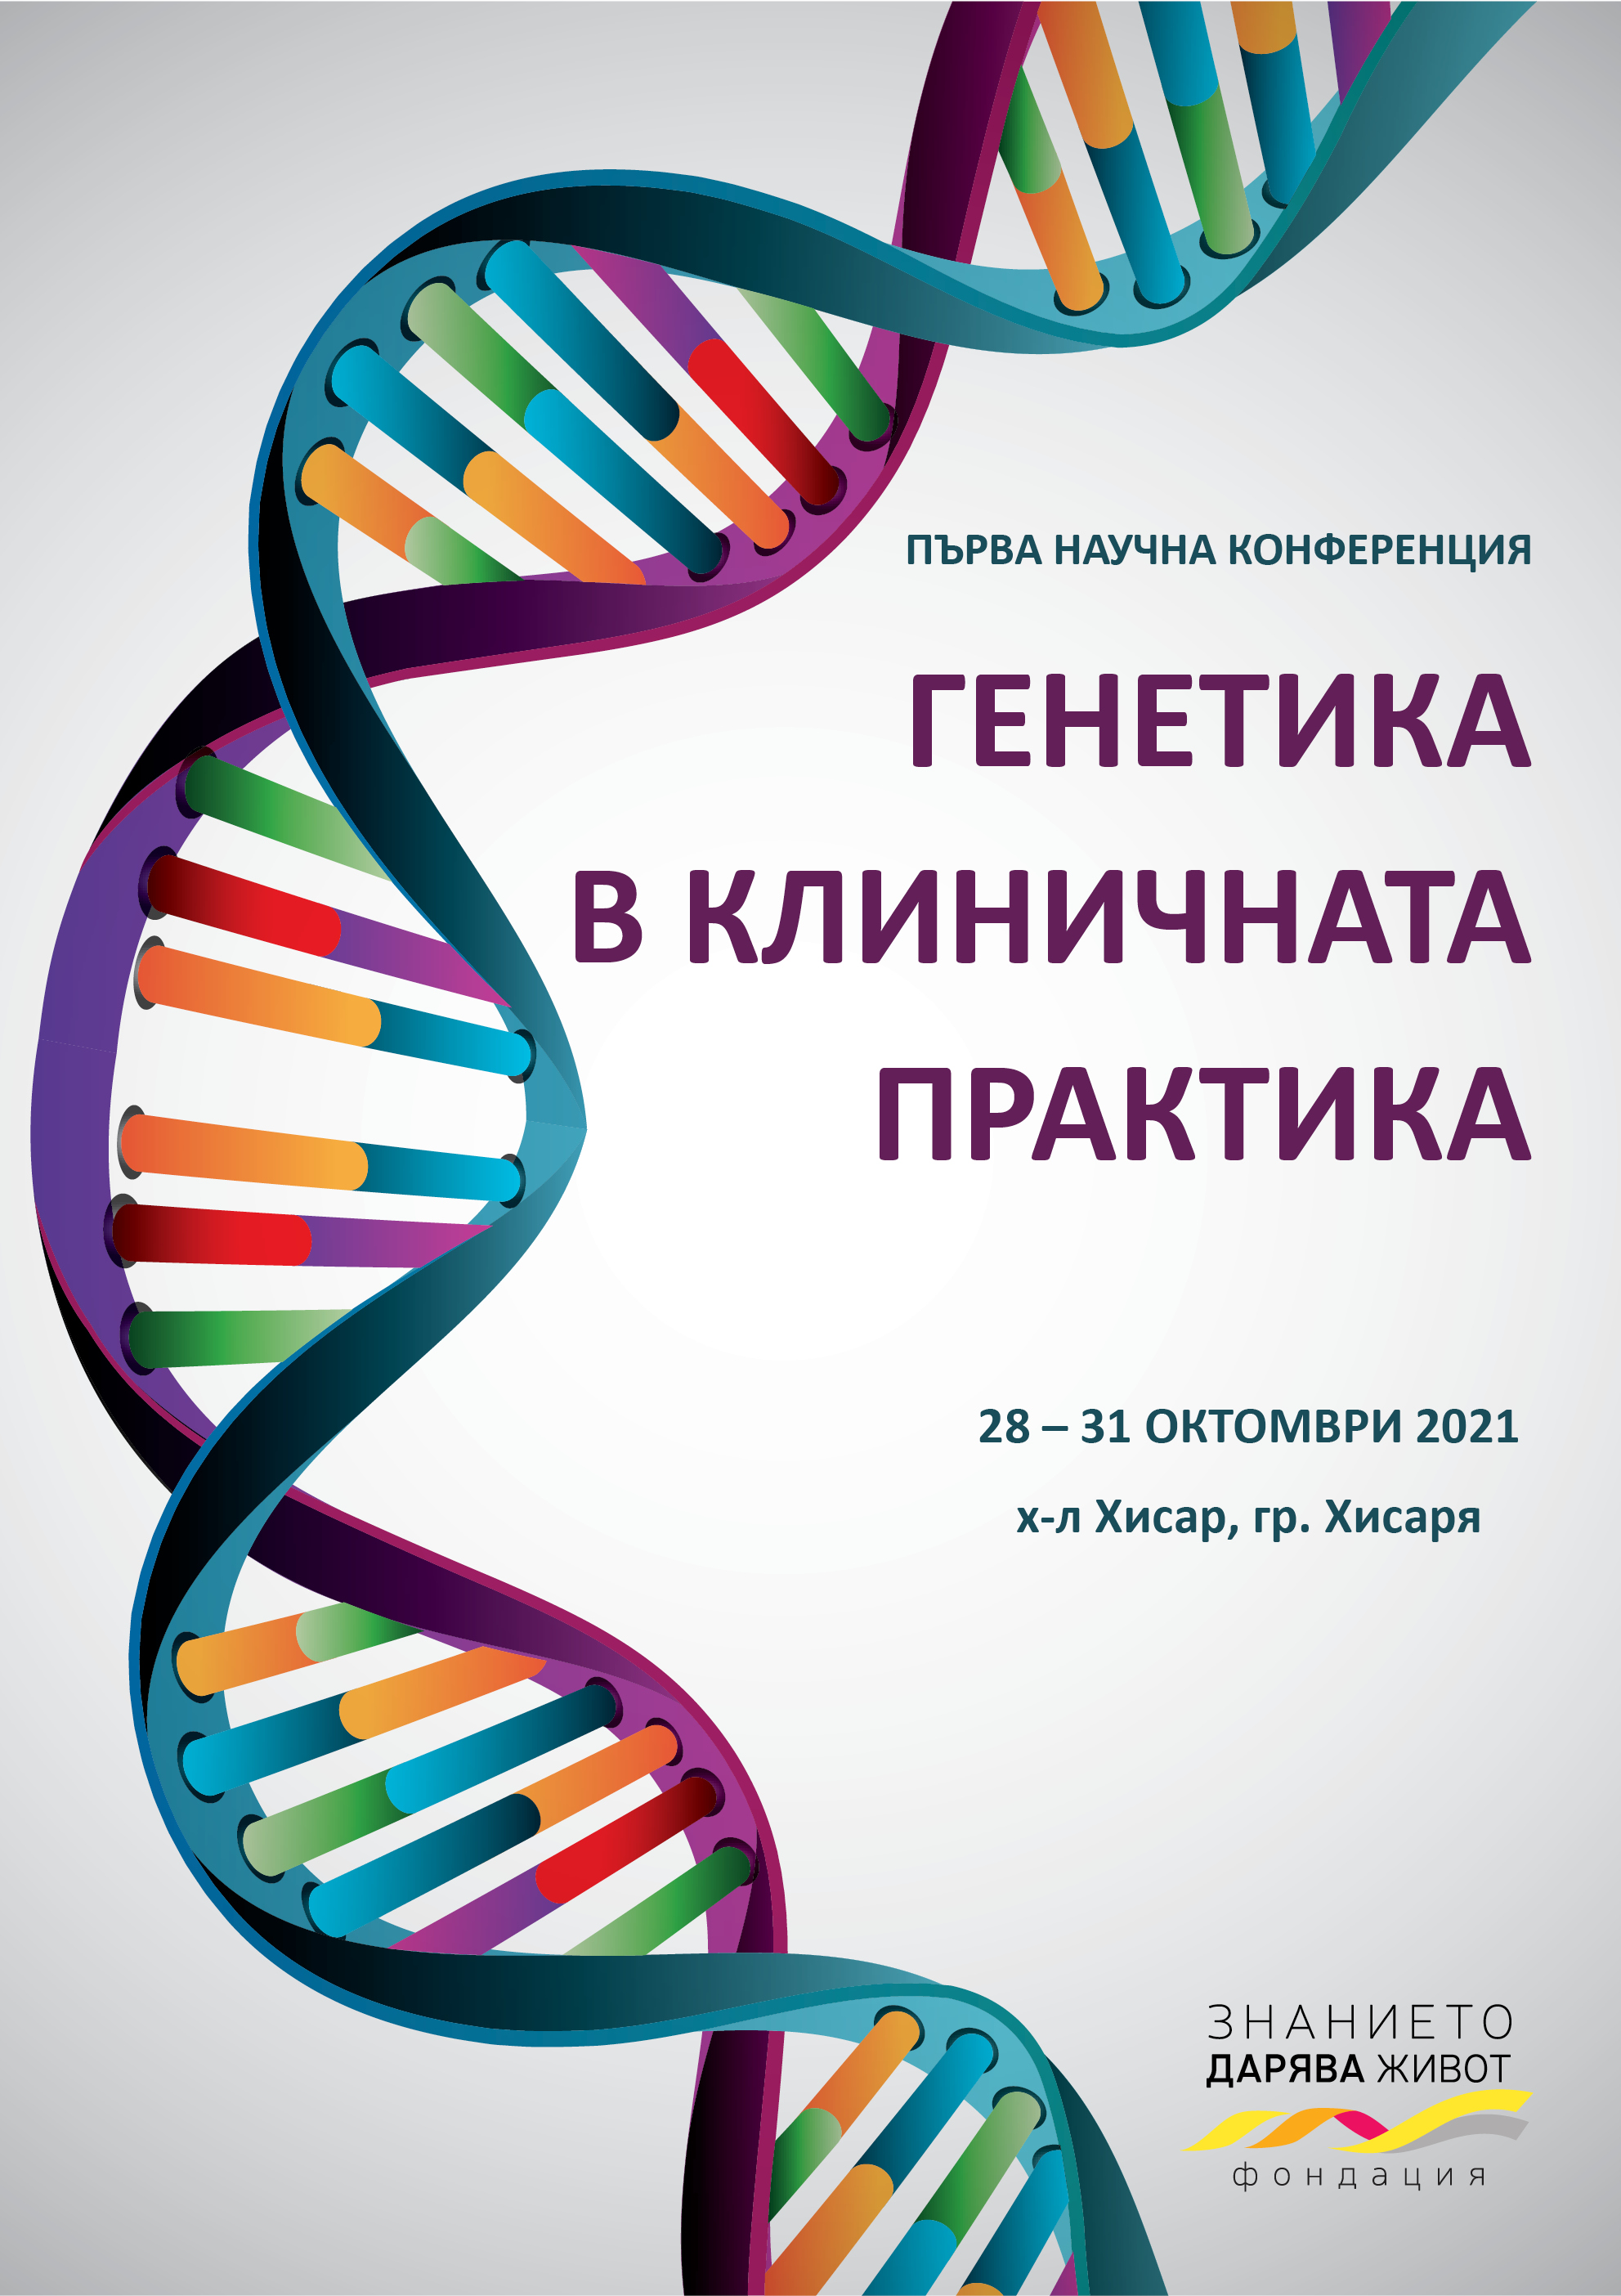 Първа научна конференция "Генетика в научната практика"